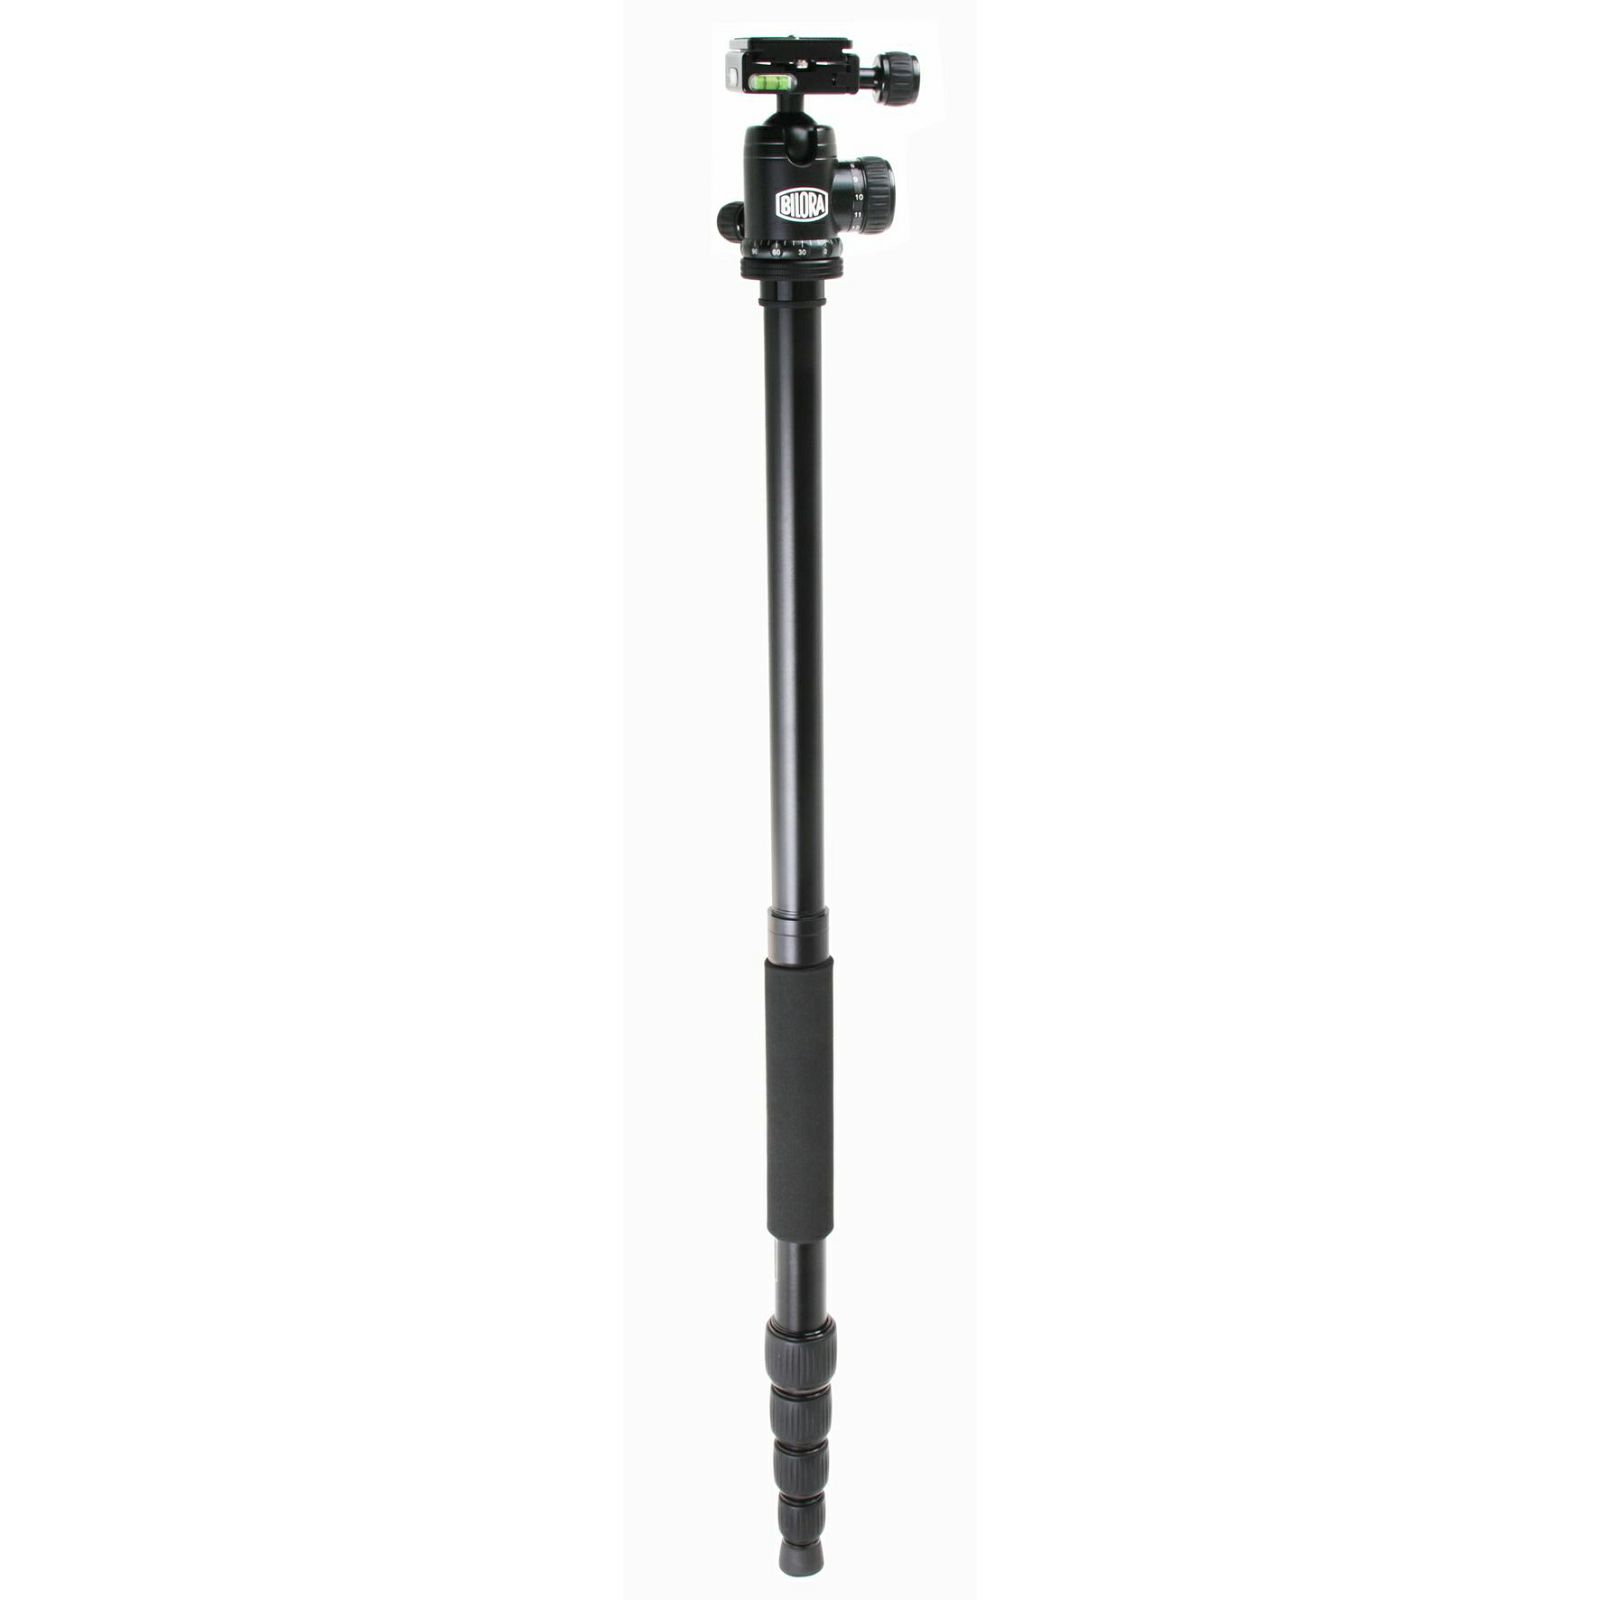 Bilora Twister Pro II Black 158cm 10kg schwarz crni aluminijski stativ za fotoaparat alu tripod + ball head kuglasta glava (TP255-1)